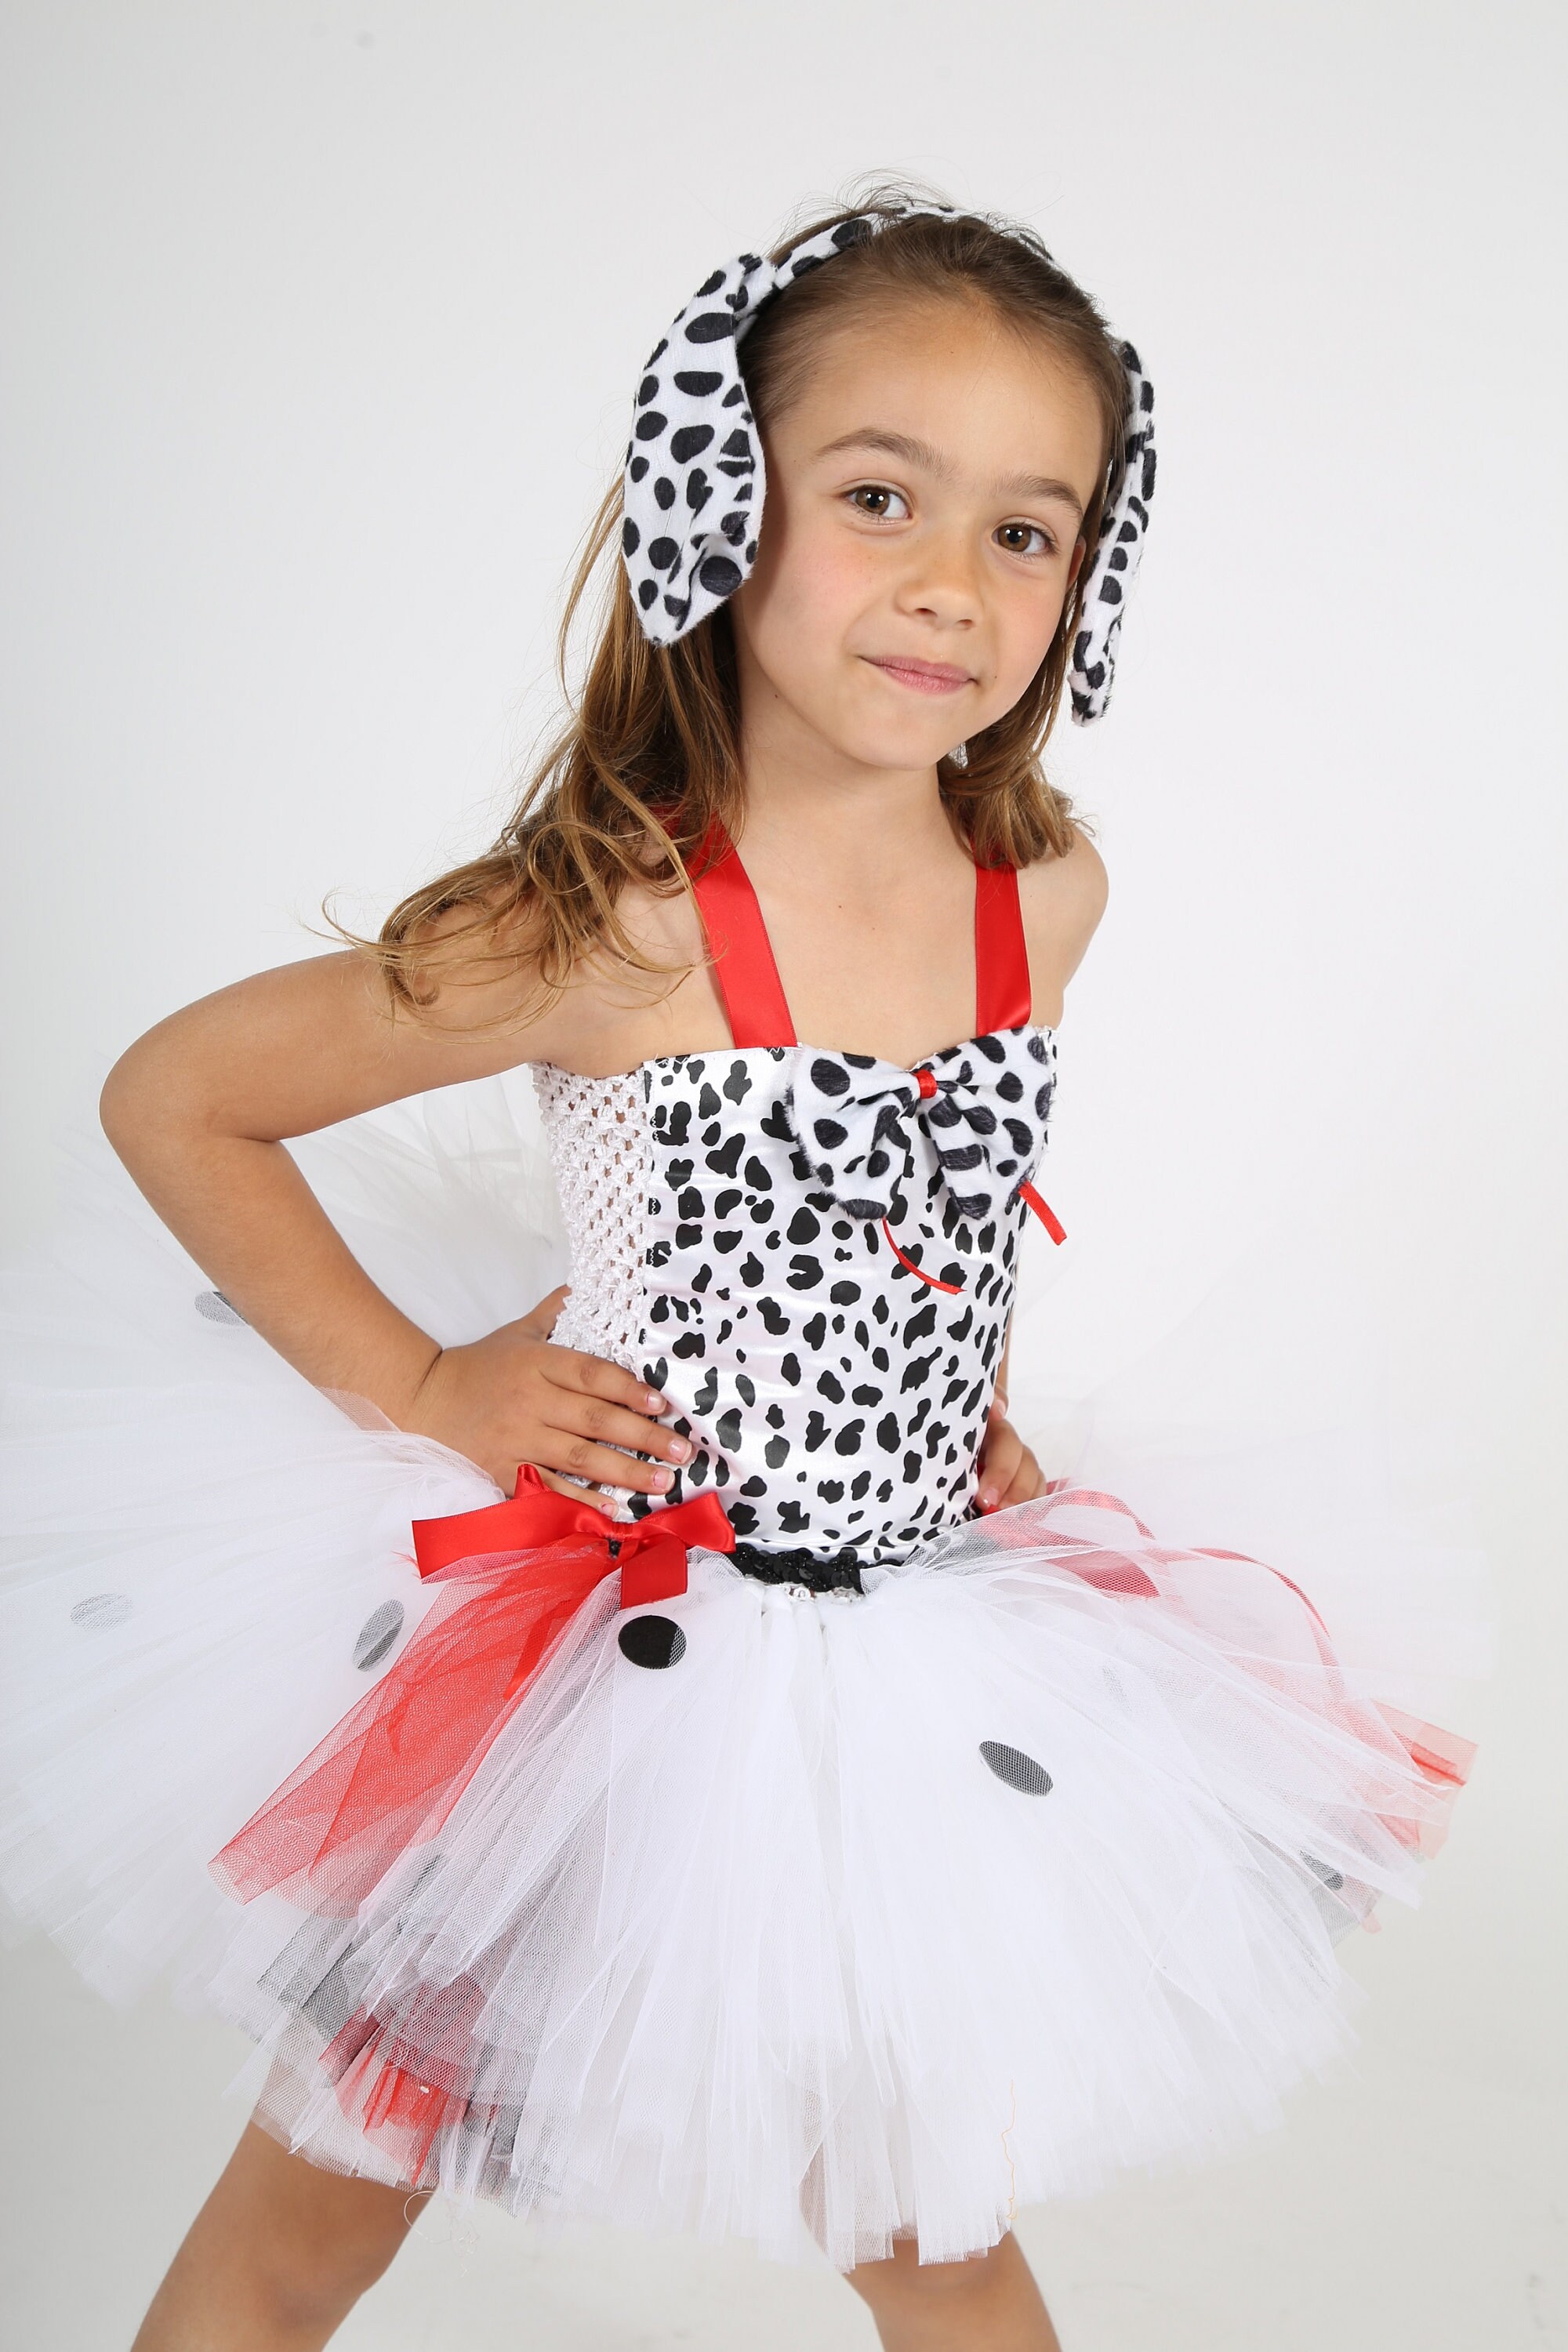 Kleding Unisex kinderkleding Kledingsets Dalmatian girl inspired TuTu costume-Dalmatian boy inspired costume 